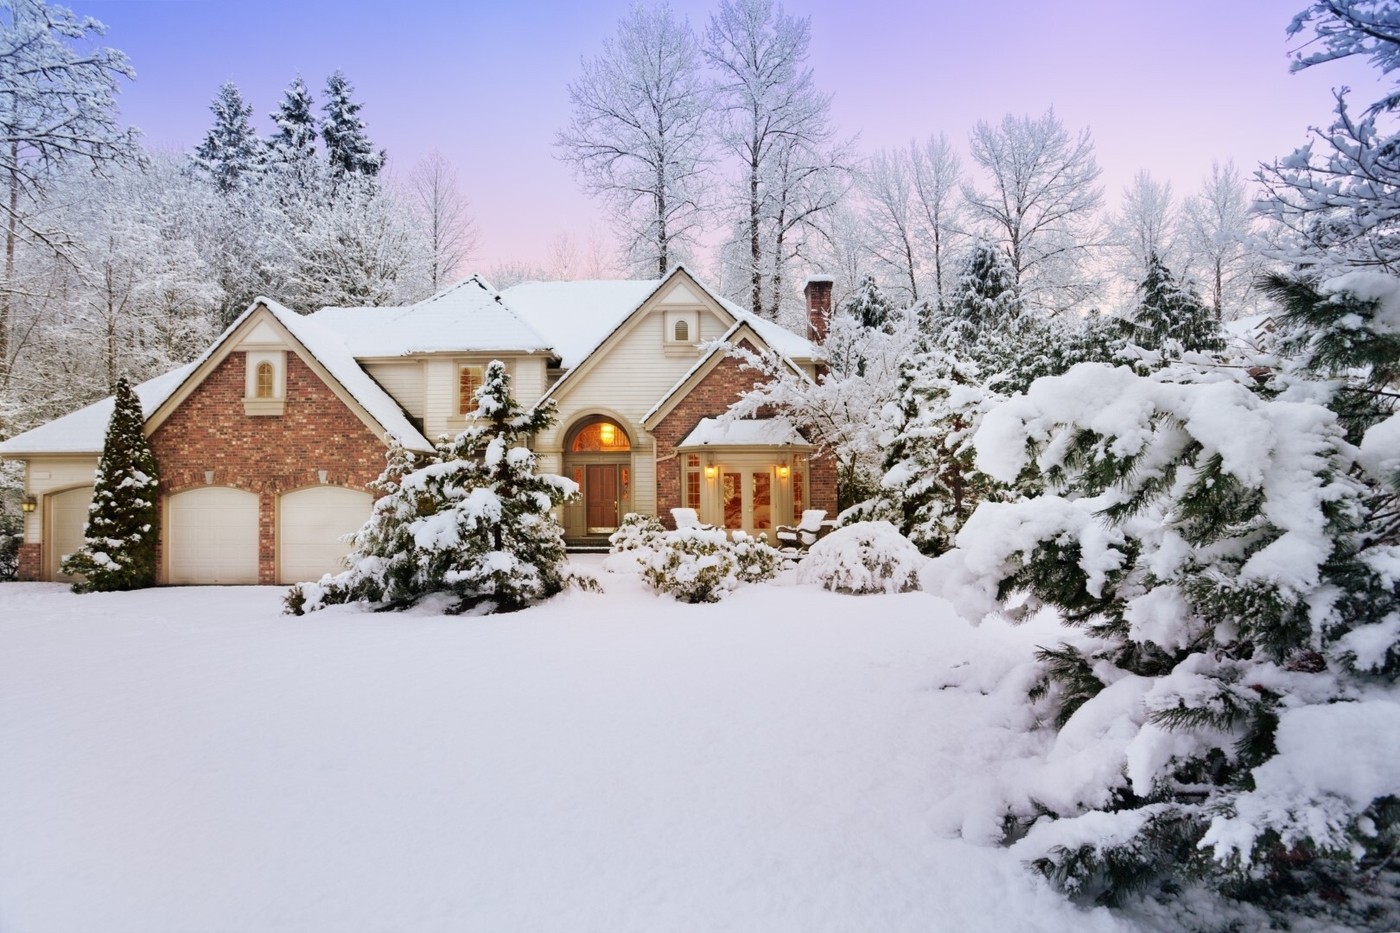 Snowy suburban home and garden